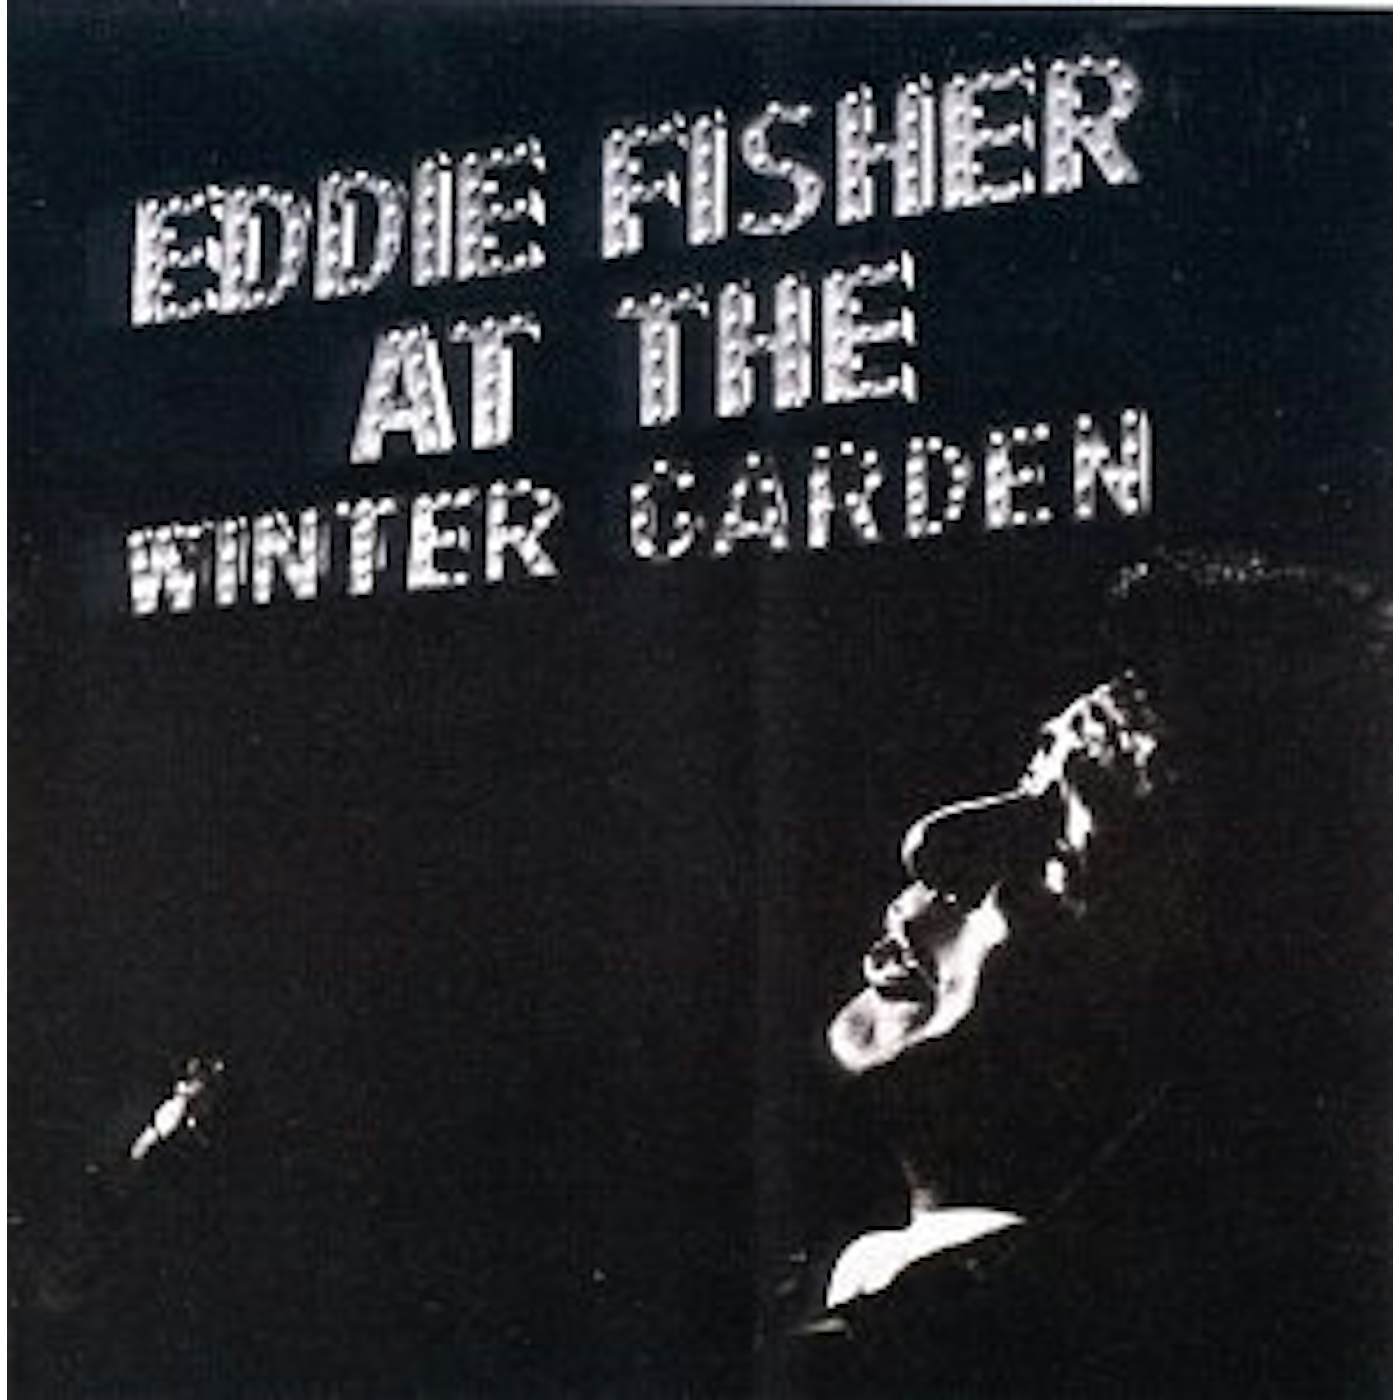 Eddie Fisher AT THE WINTER GARDEN CD